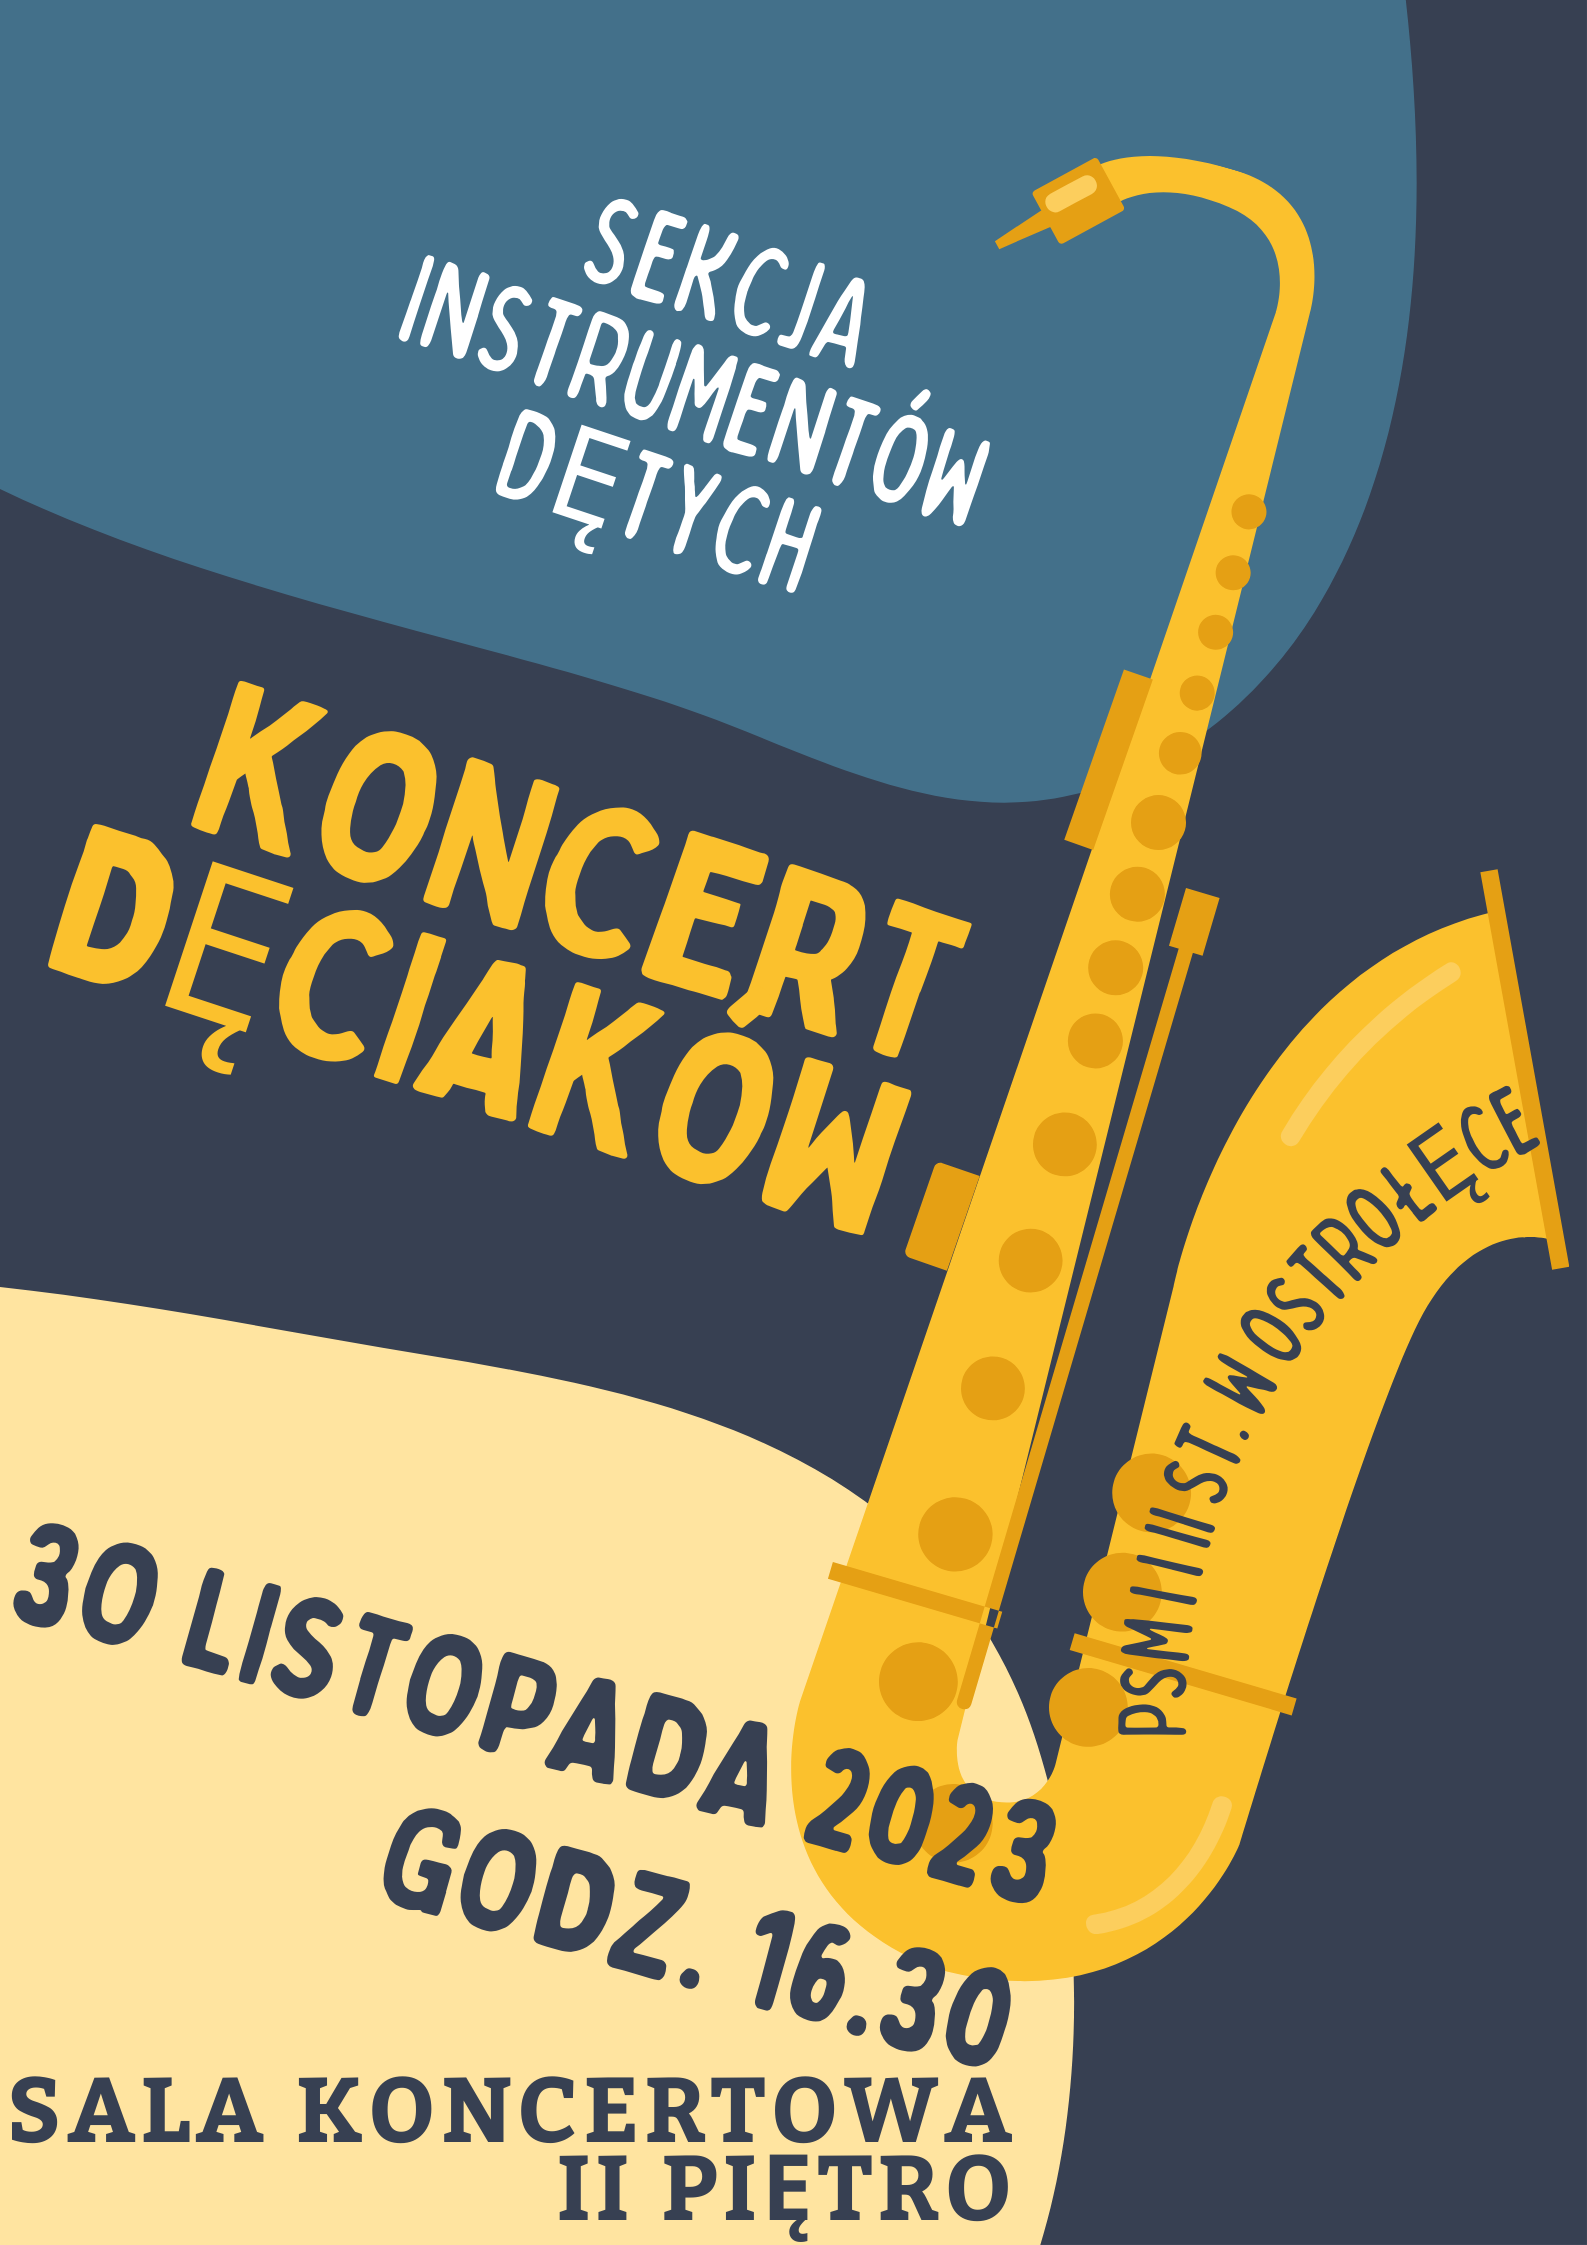 Sekcja Instrumentów Dętych zaprasza na Koncert Dęciaków - 30 listopada 2023 godz. 16.30 Sala koncertowa II piętro